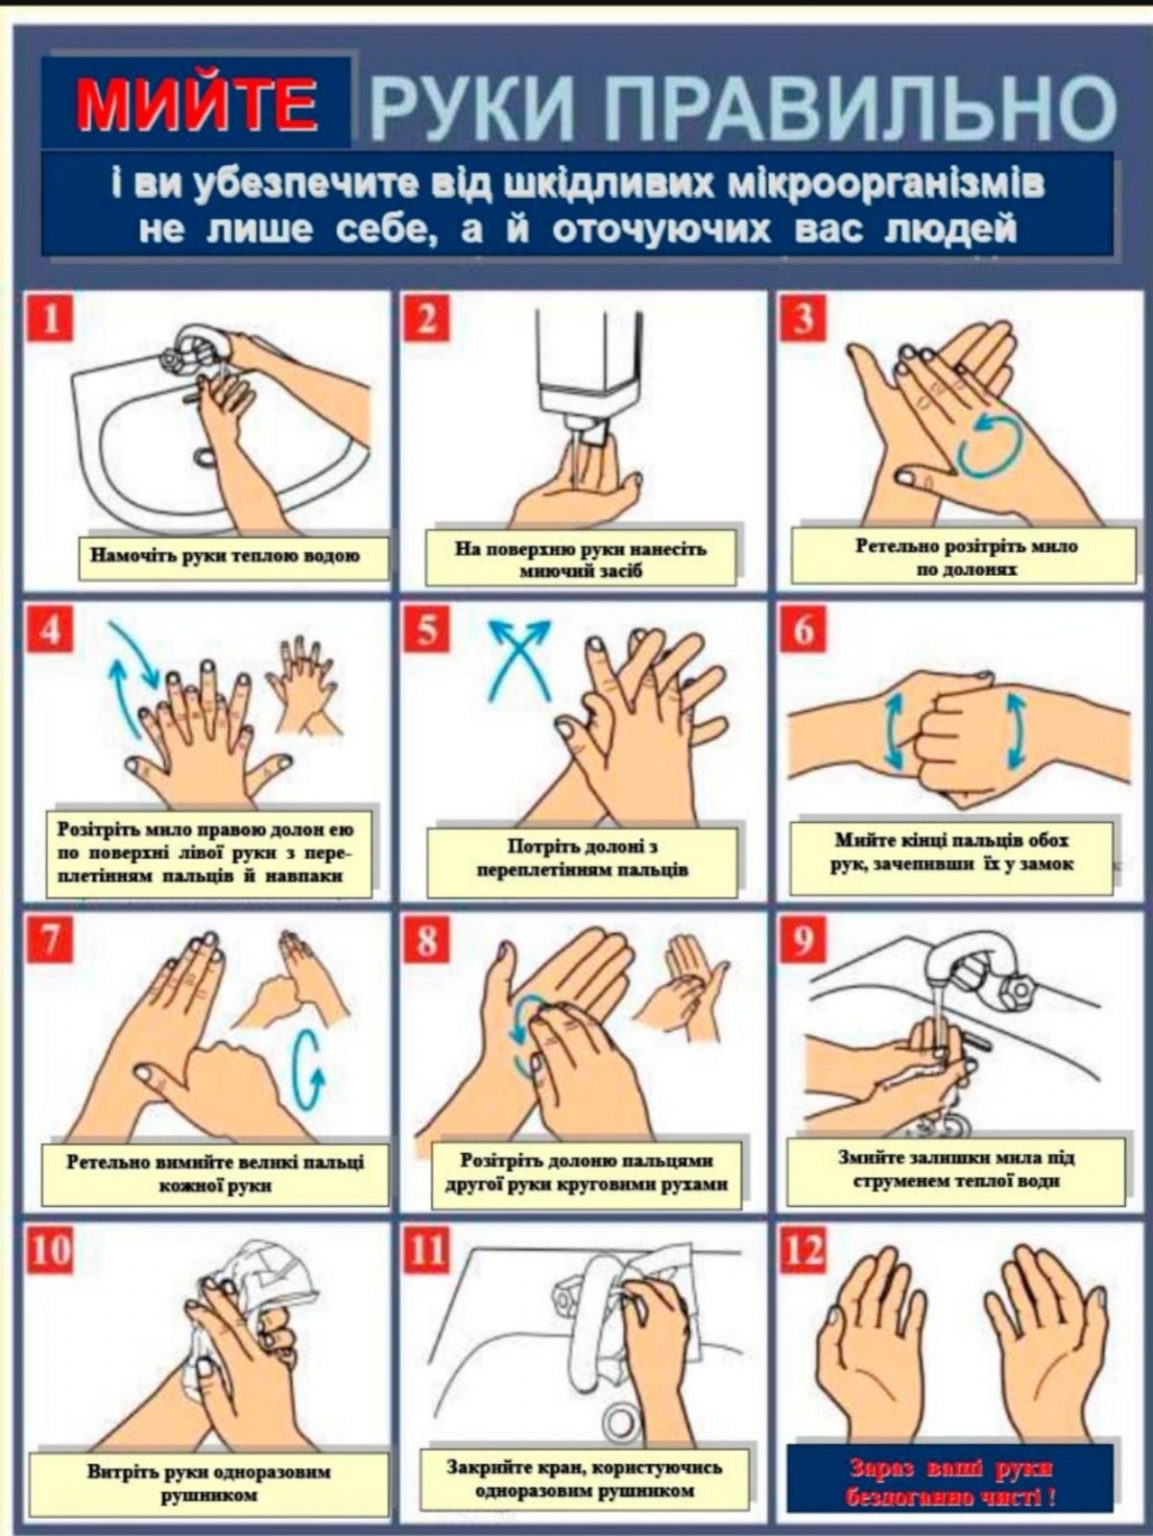 Температура при мытье рук должна быть. Гигиенический метод мытья рук алгоритм. Гигиеническая обработка рук медицинского персонала САНПИН 2022. Схема гигиенической обработки рук. Инструкция по мытью рук.